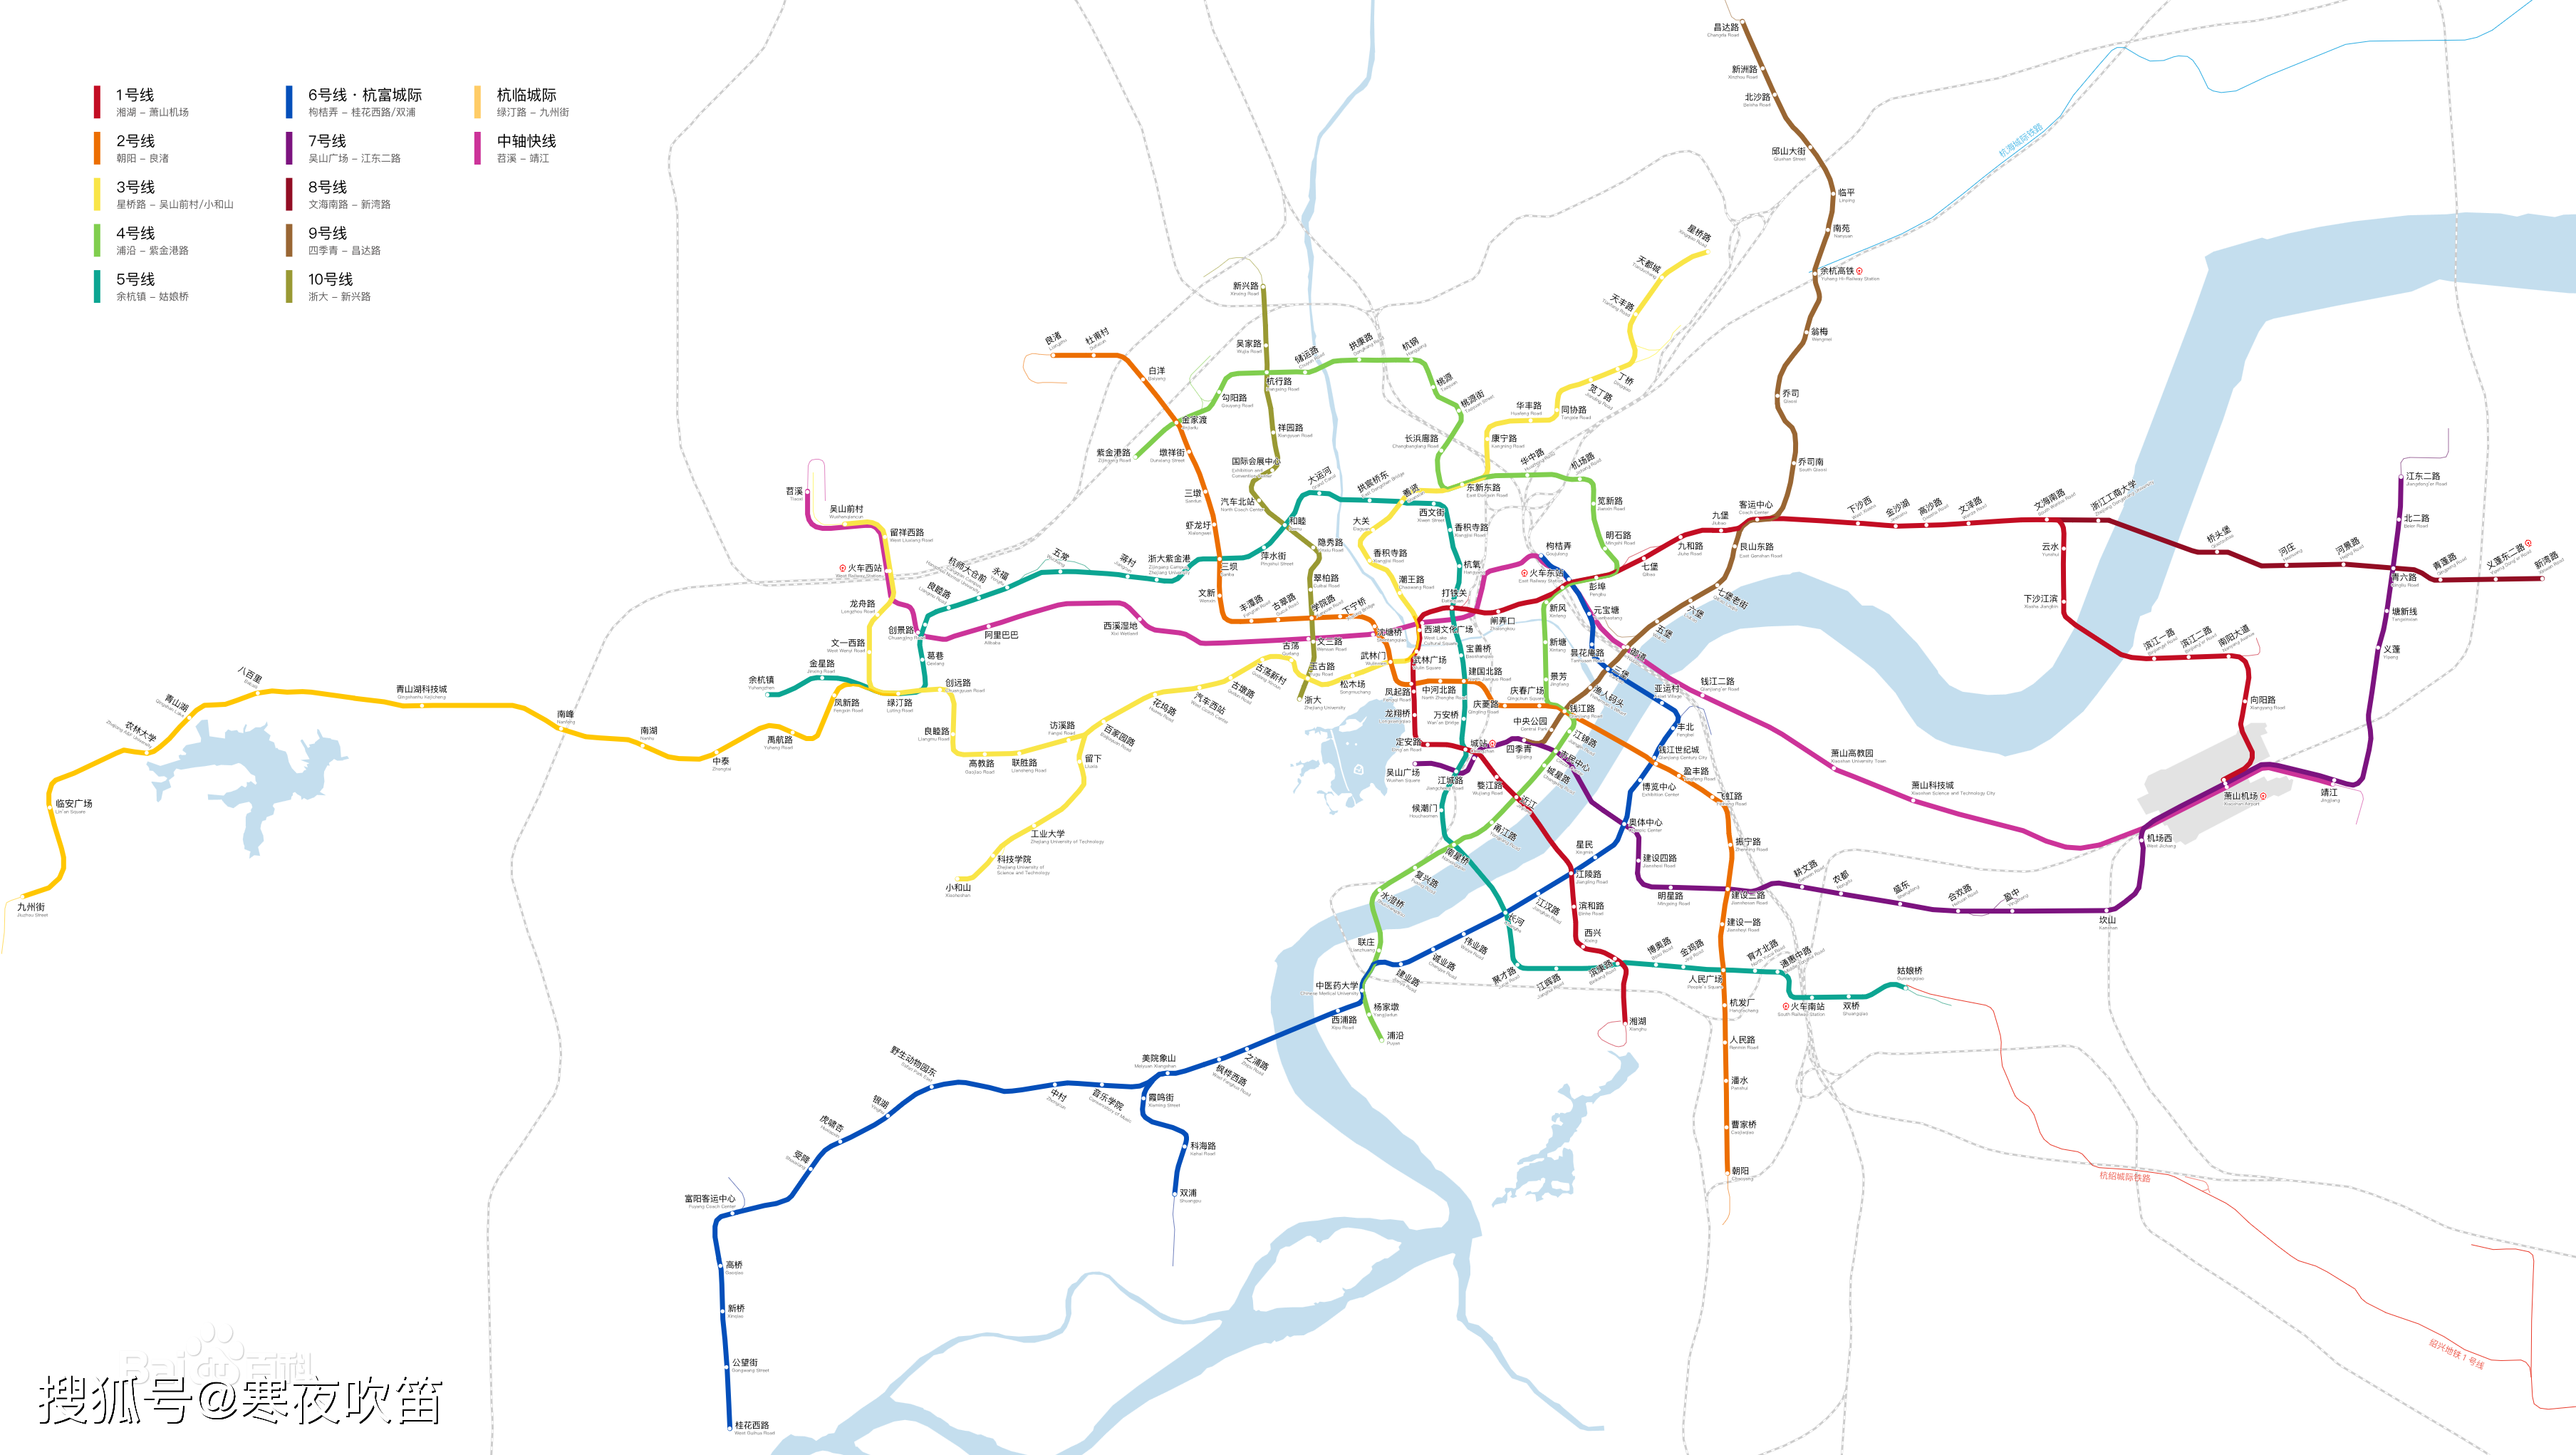 2022年亚运会前,杭州将建成13条轨道交通线路